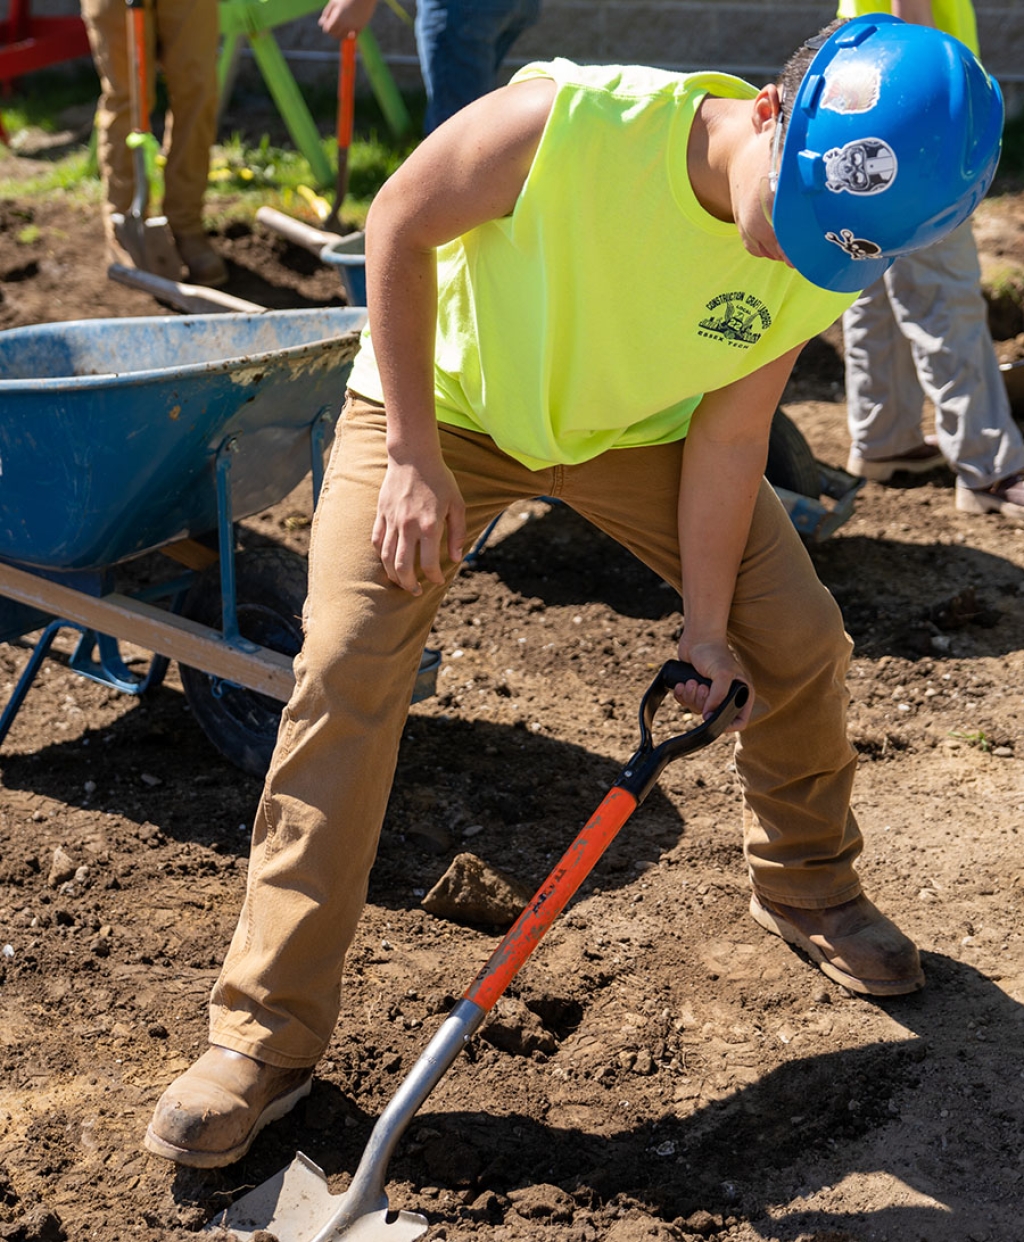 Un étudiant pellette de la terre sur un chantier de construction.